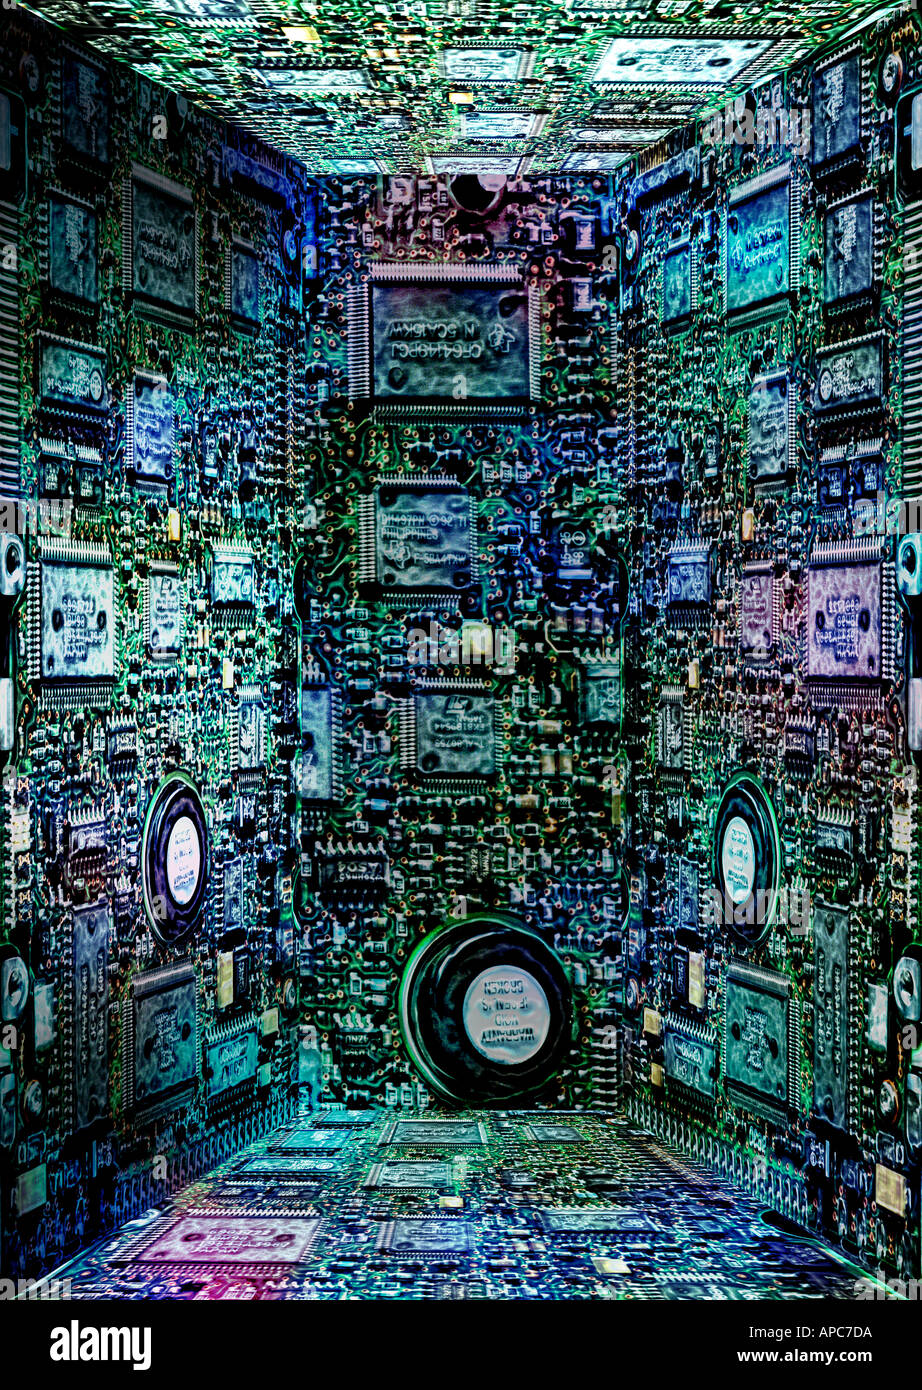 Abbildung Computer Mann Chip Board Panoramaaufnahmen Farbdaten künstlichen Raum drei dimensionalen Würfel Drähte Elektronik moderne Stockfoto